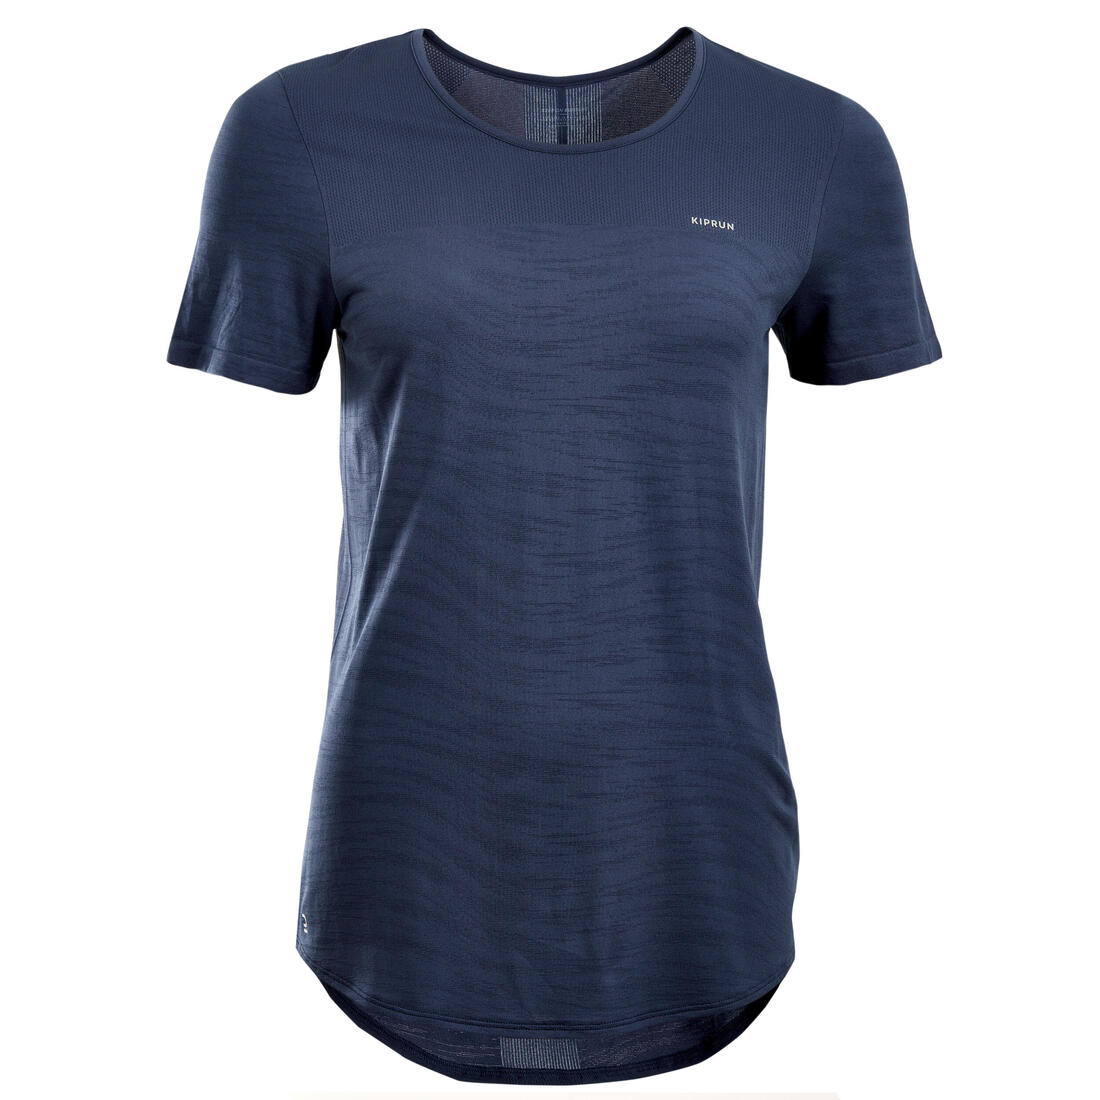 KIPRUN(キプラン) ランニング Tシャツ 透湿性 CARE レディース